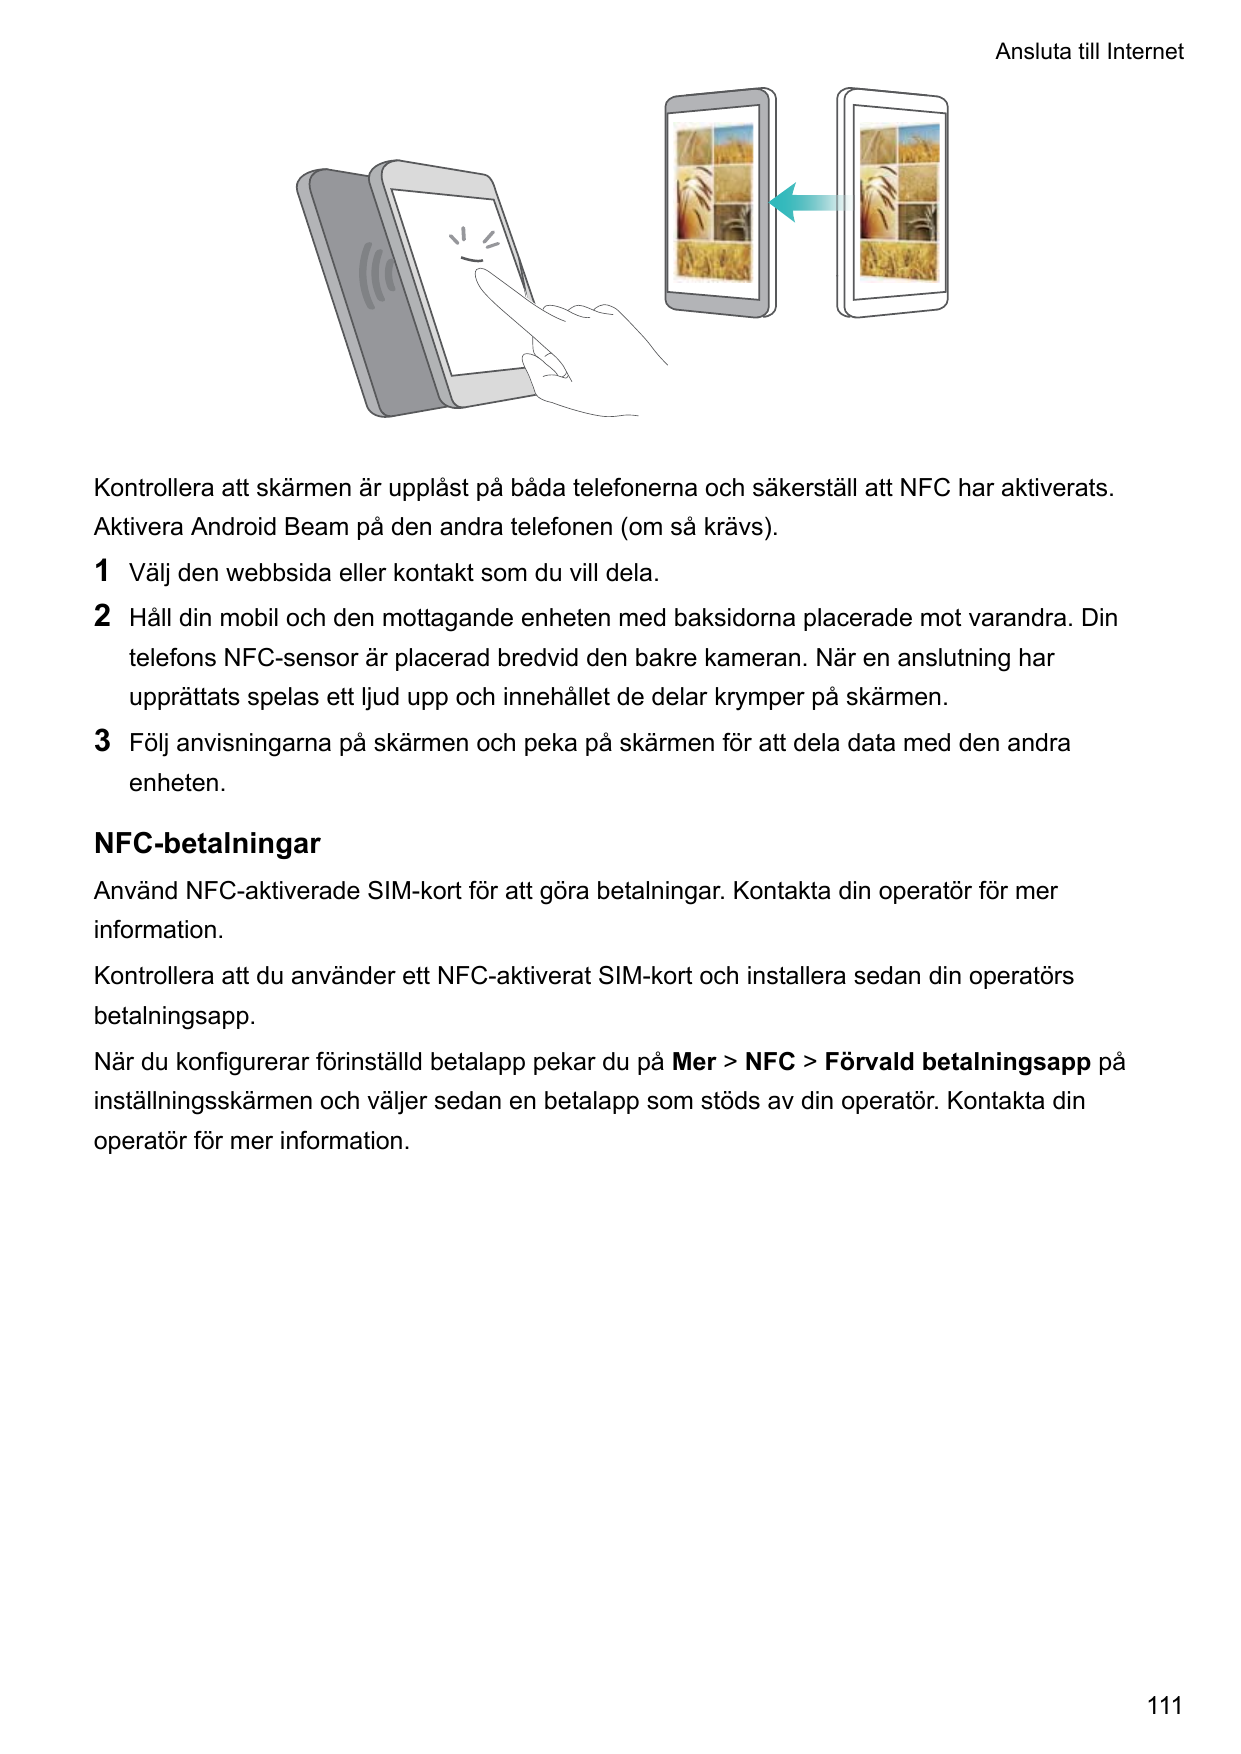 Ansluta till InternetKontrollera att skärmen är upplåst på båda telefonerna och säkerställ att NFC har aktiverats.Aktivera Andro